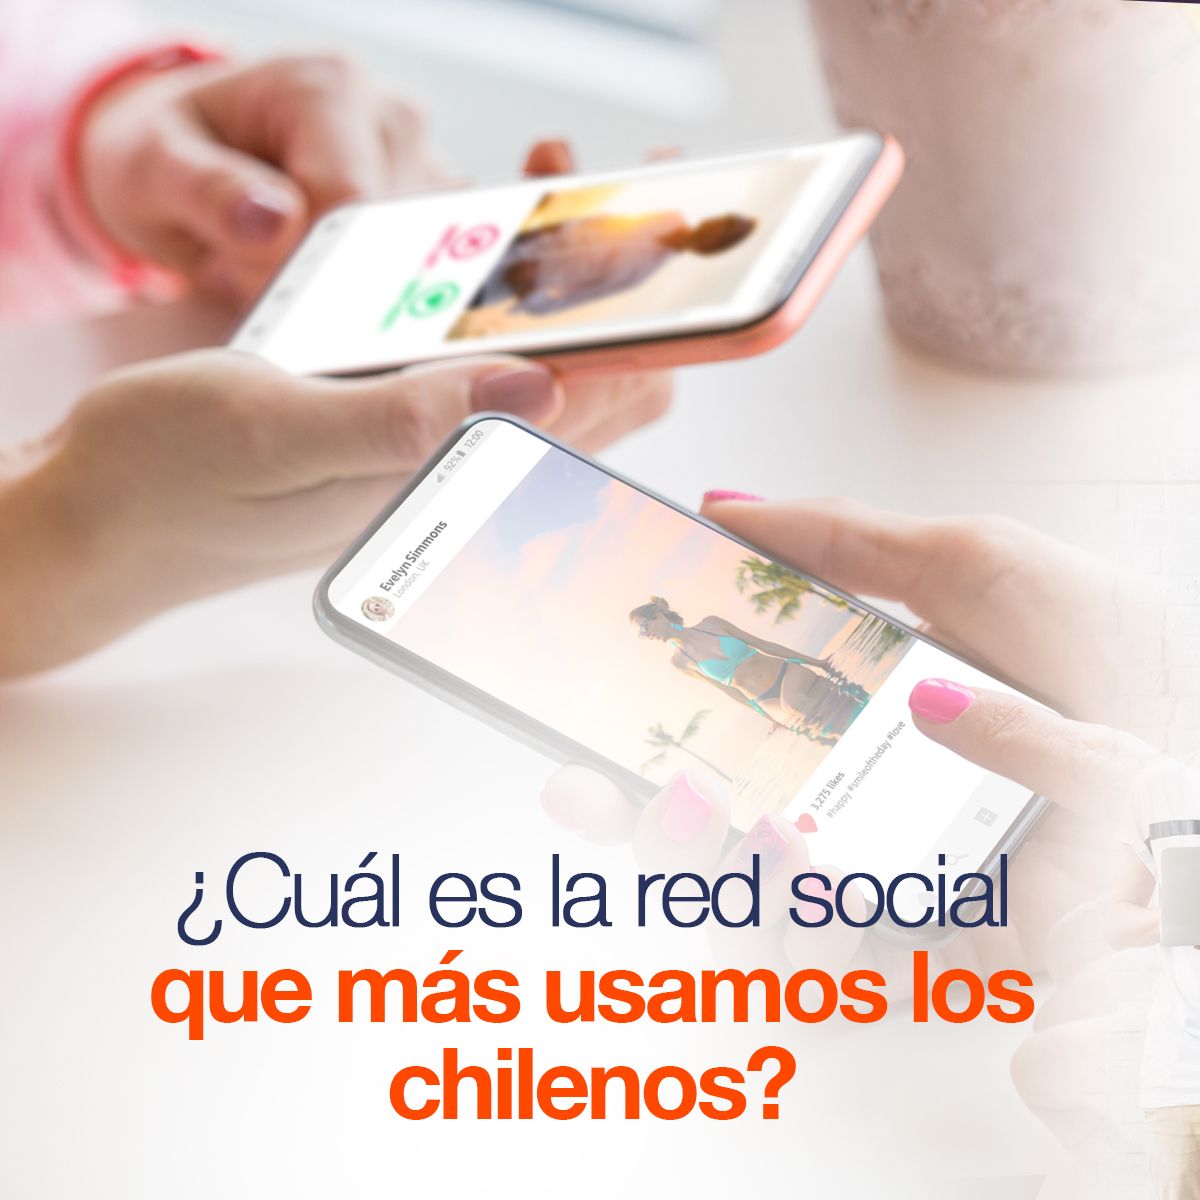 ¿Cuál es la red social que más están usando los chilenos?